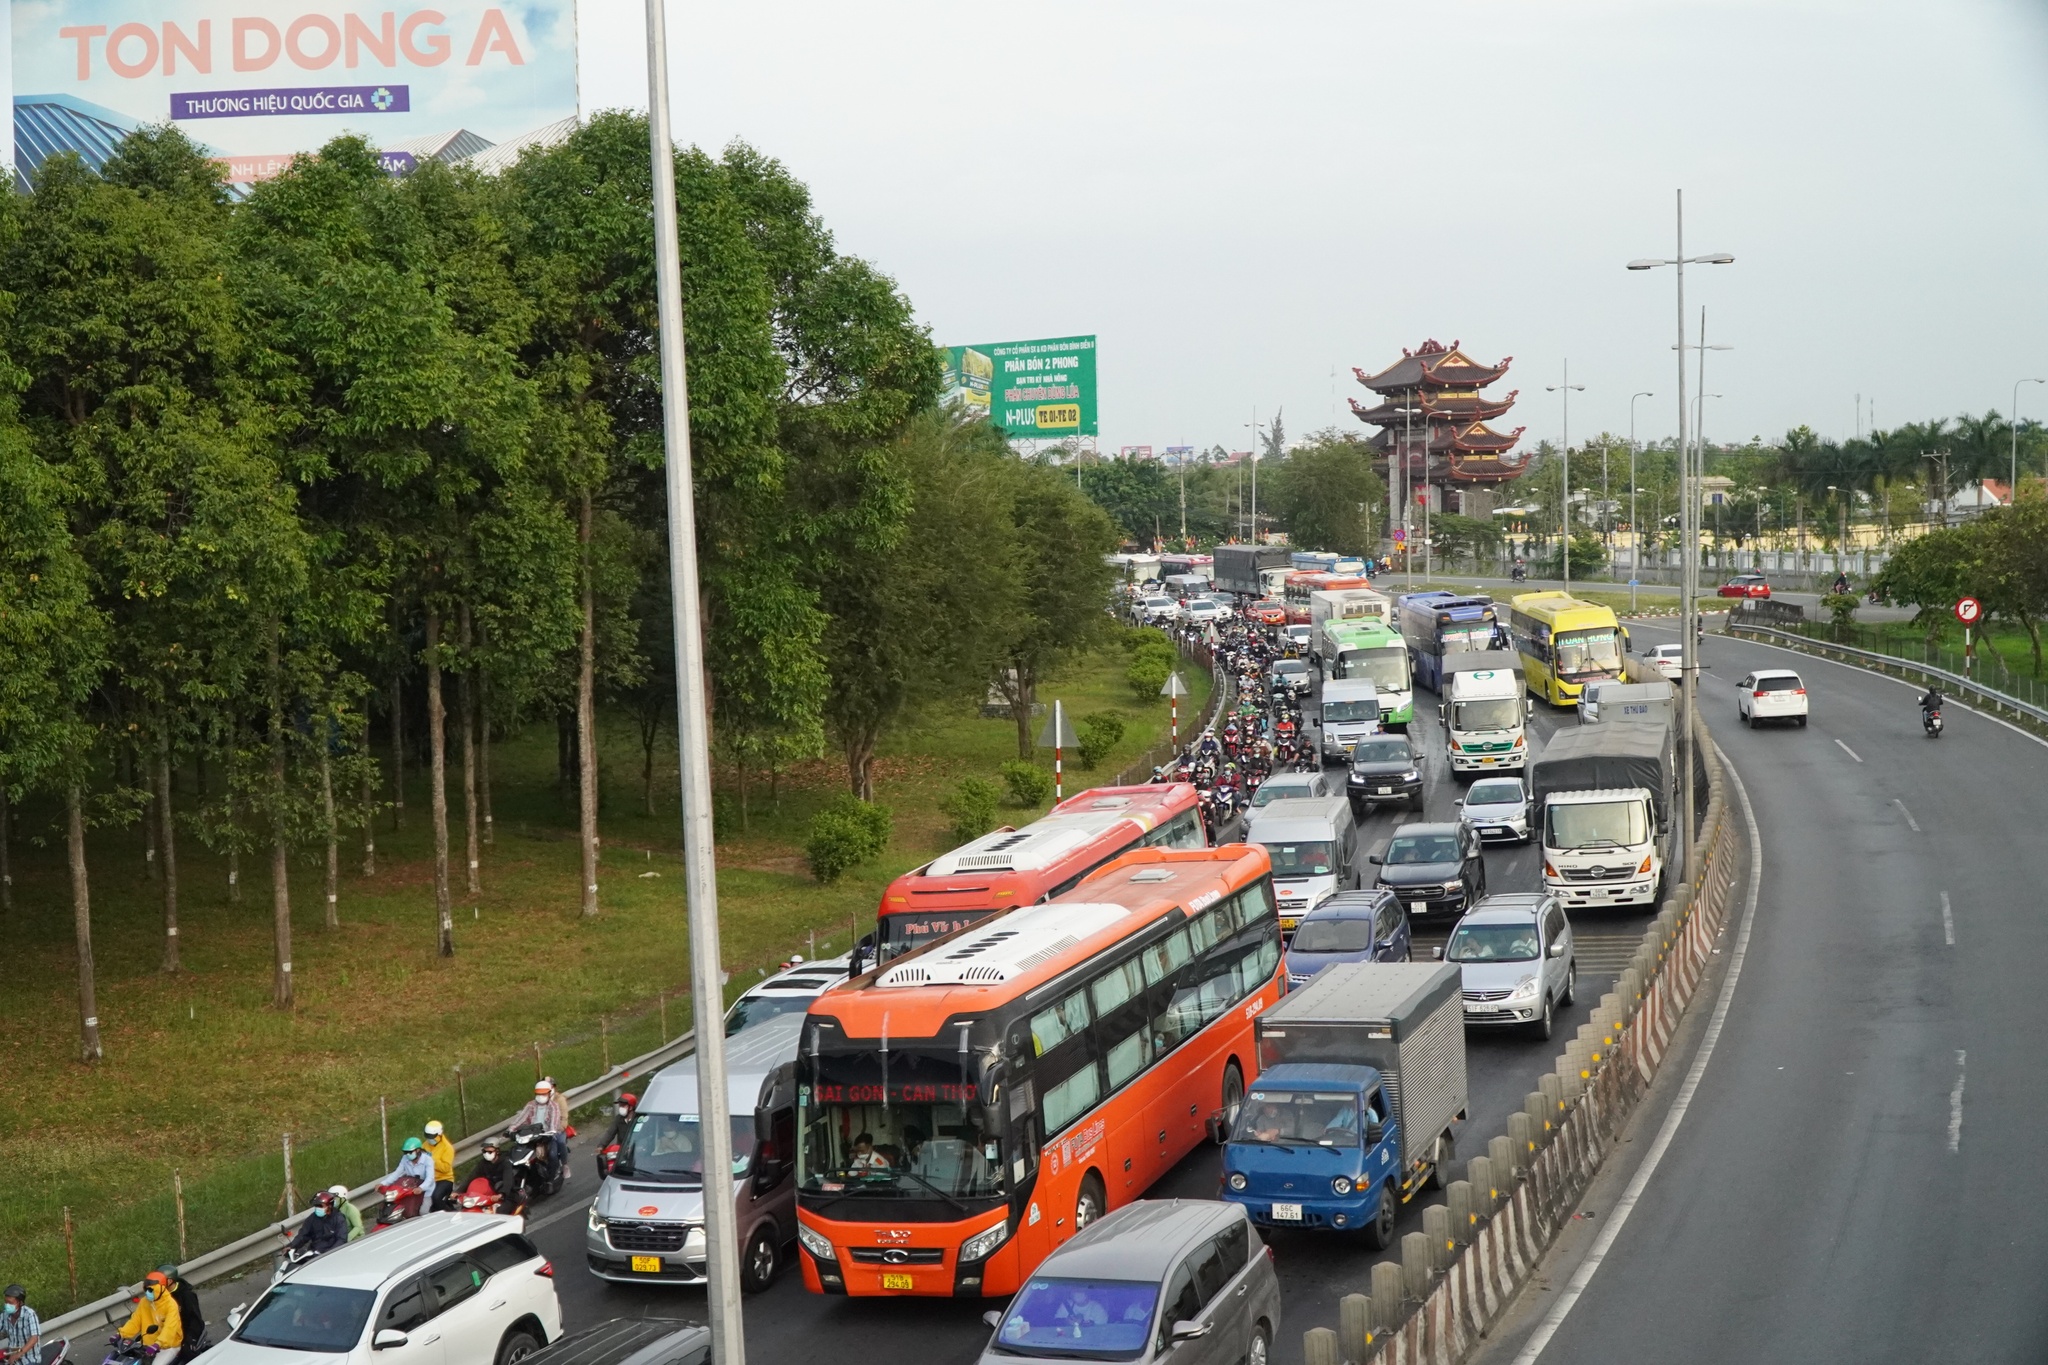 Cầu Mỹ Thuận tiếp tục ùn tắc nặng nề trong chiều mùng 8 tết - ảnh 3